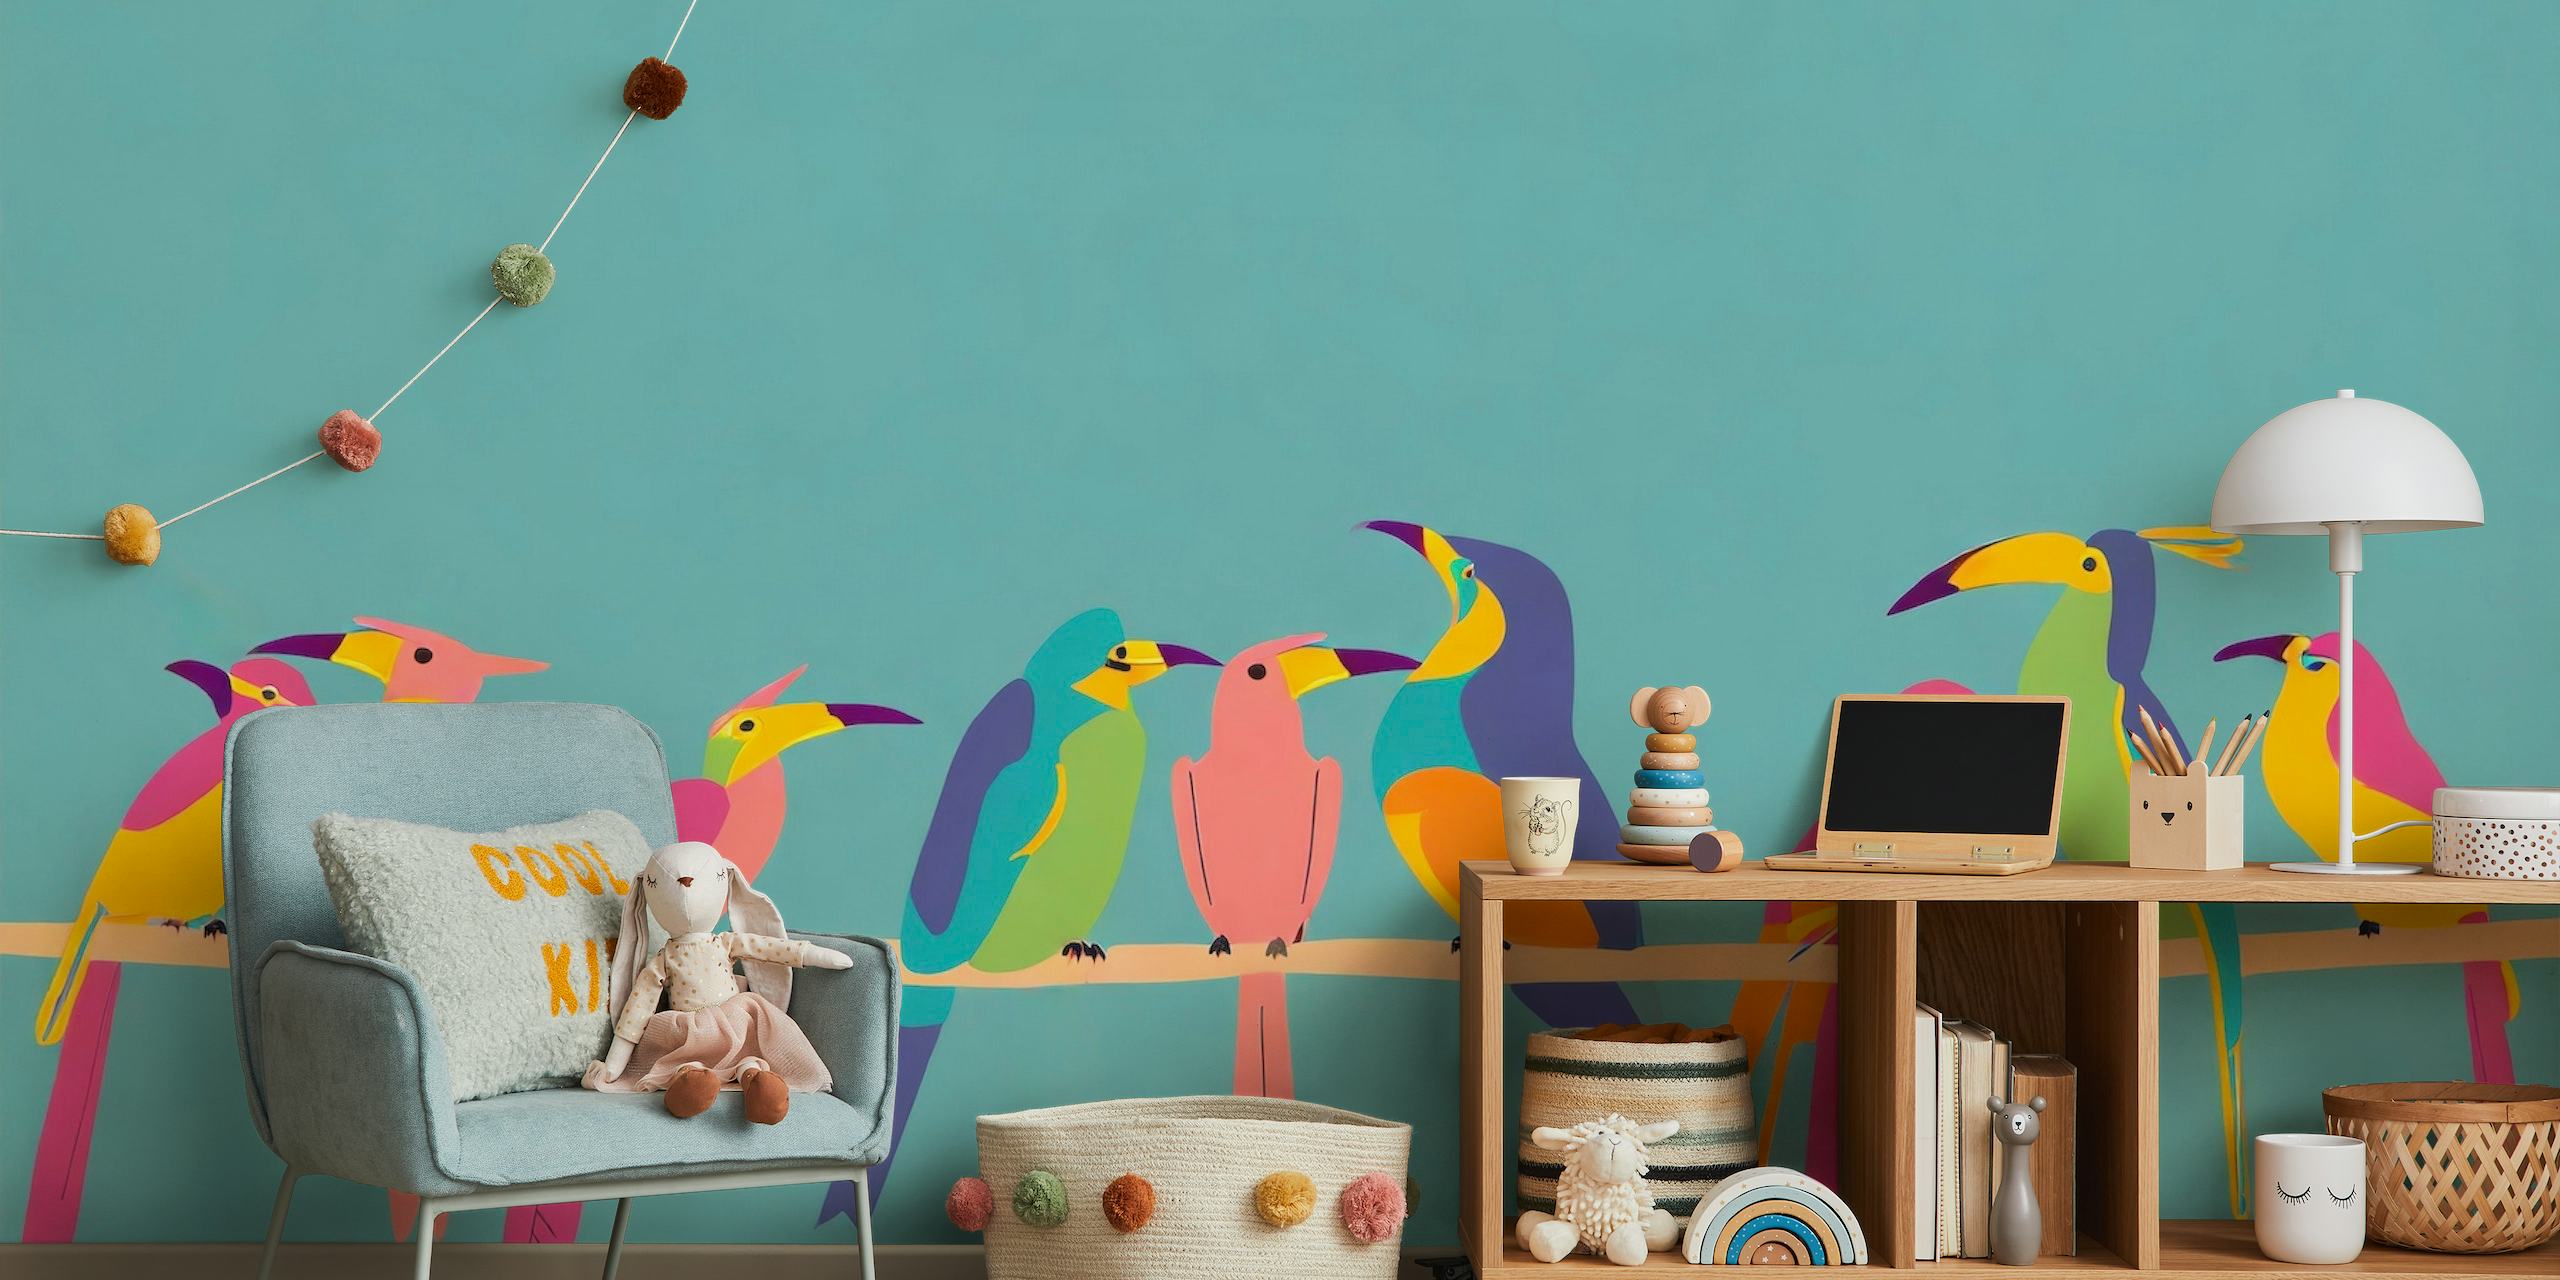 Fototapeta Ilustrace stylizovaných barevných ptáků na větvi proti modrozelenému pozadí